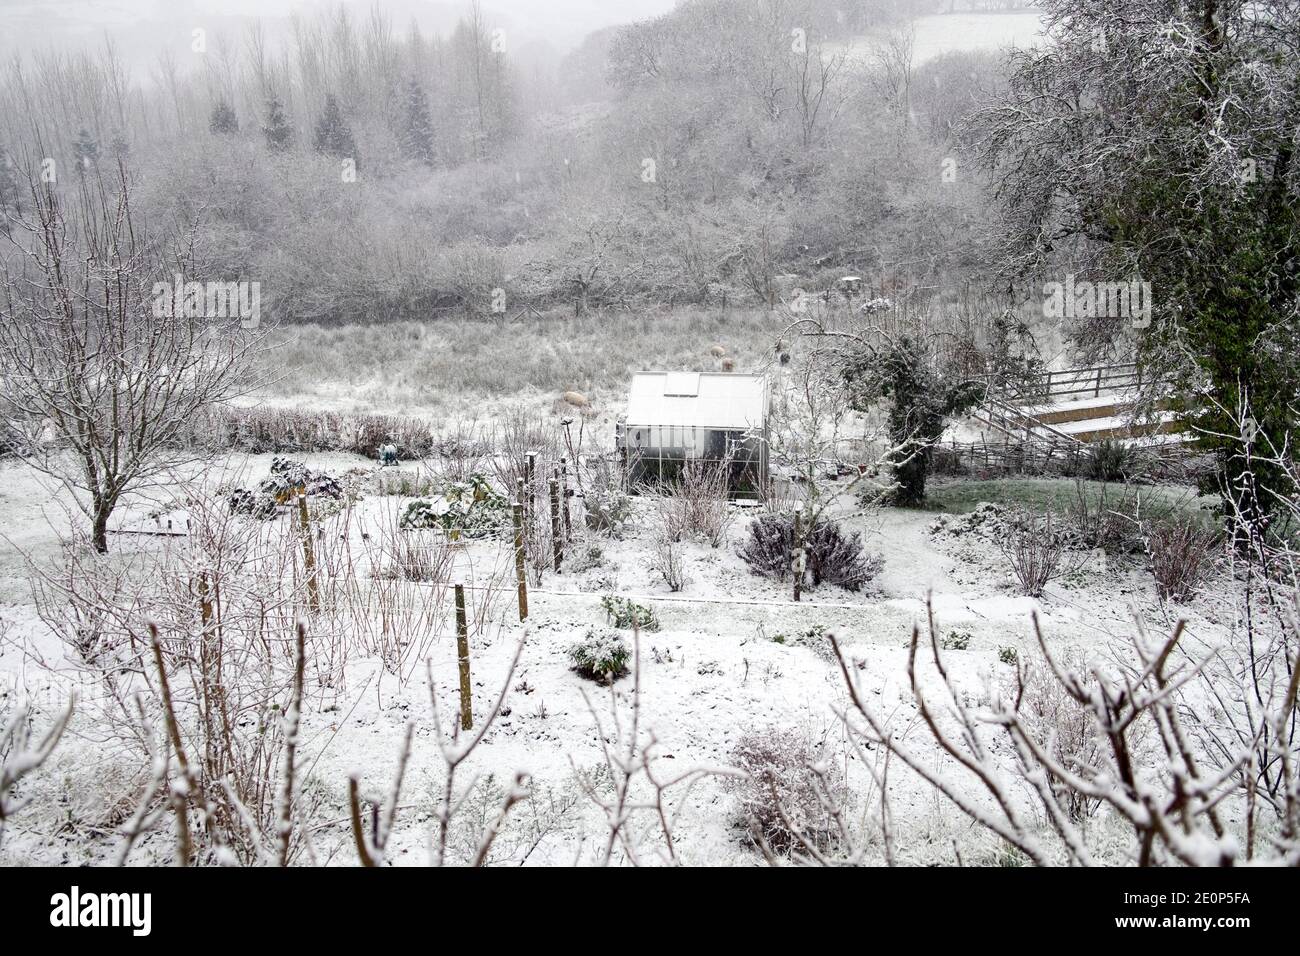 Gewächshaus im verschneiten Winter Schnee Landschaft Garten schöne ländliche Land Landschaft Dezember 2020 Carmarthenshire Wales Großbritannien KATHY DEWITT Stockfoto